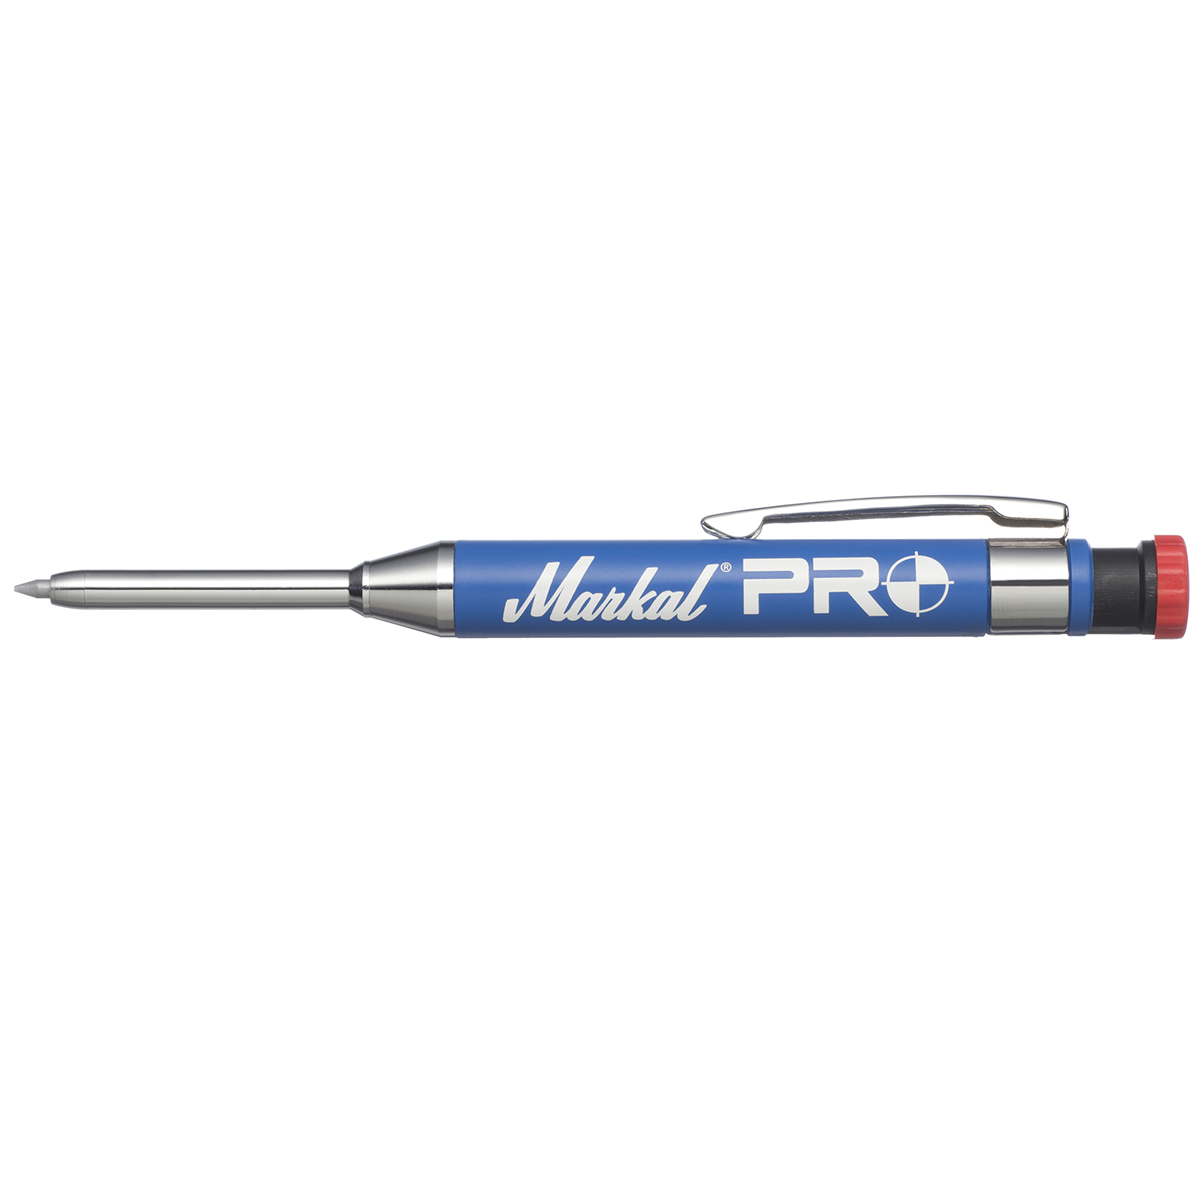 Сварочное оборудование Markal Silver Streak Welders Mark Pencil 12 Pencils  With Order - 394724231950 - купить на .com (США) с доставкой в Украину